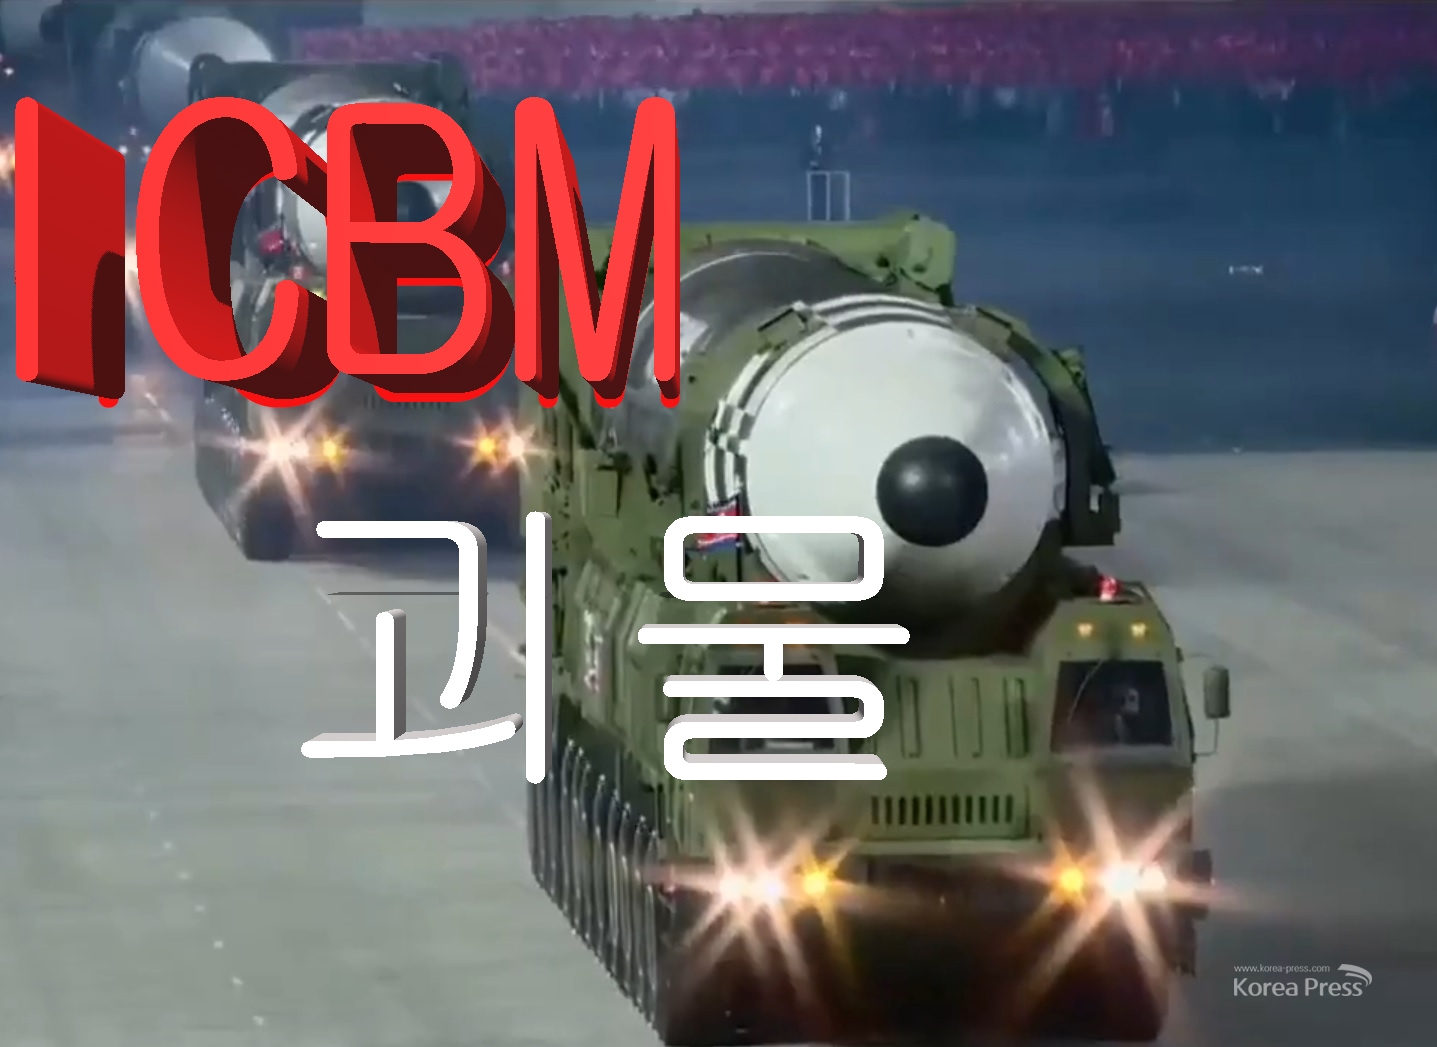 북한 괴물 ICBM SLBM 대공개, 조선민주주의인민공화국이 10일 노동당 창건 75돌 기념 열병식에서 대륙간탄도미사일(ICBM)과 잠수함발사탄도미사일(SLBM) 등 두 종류의 새로운 전략무기를 선보였다.